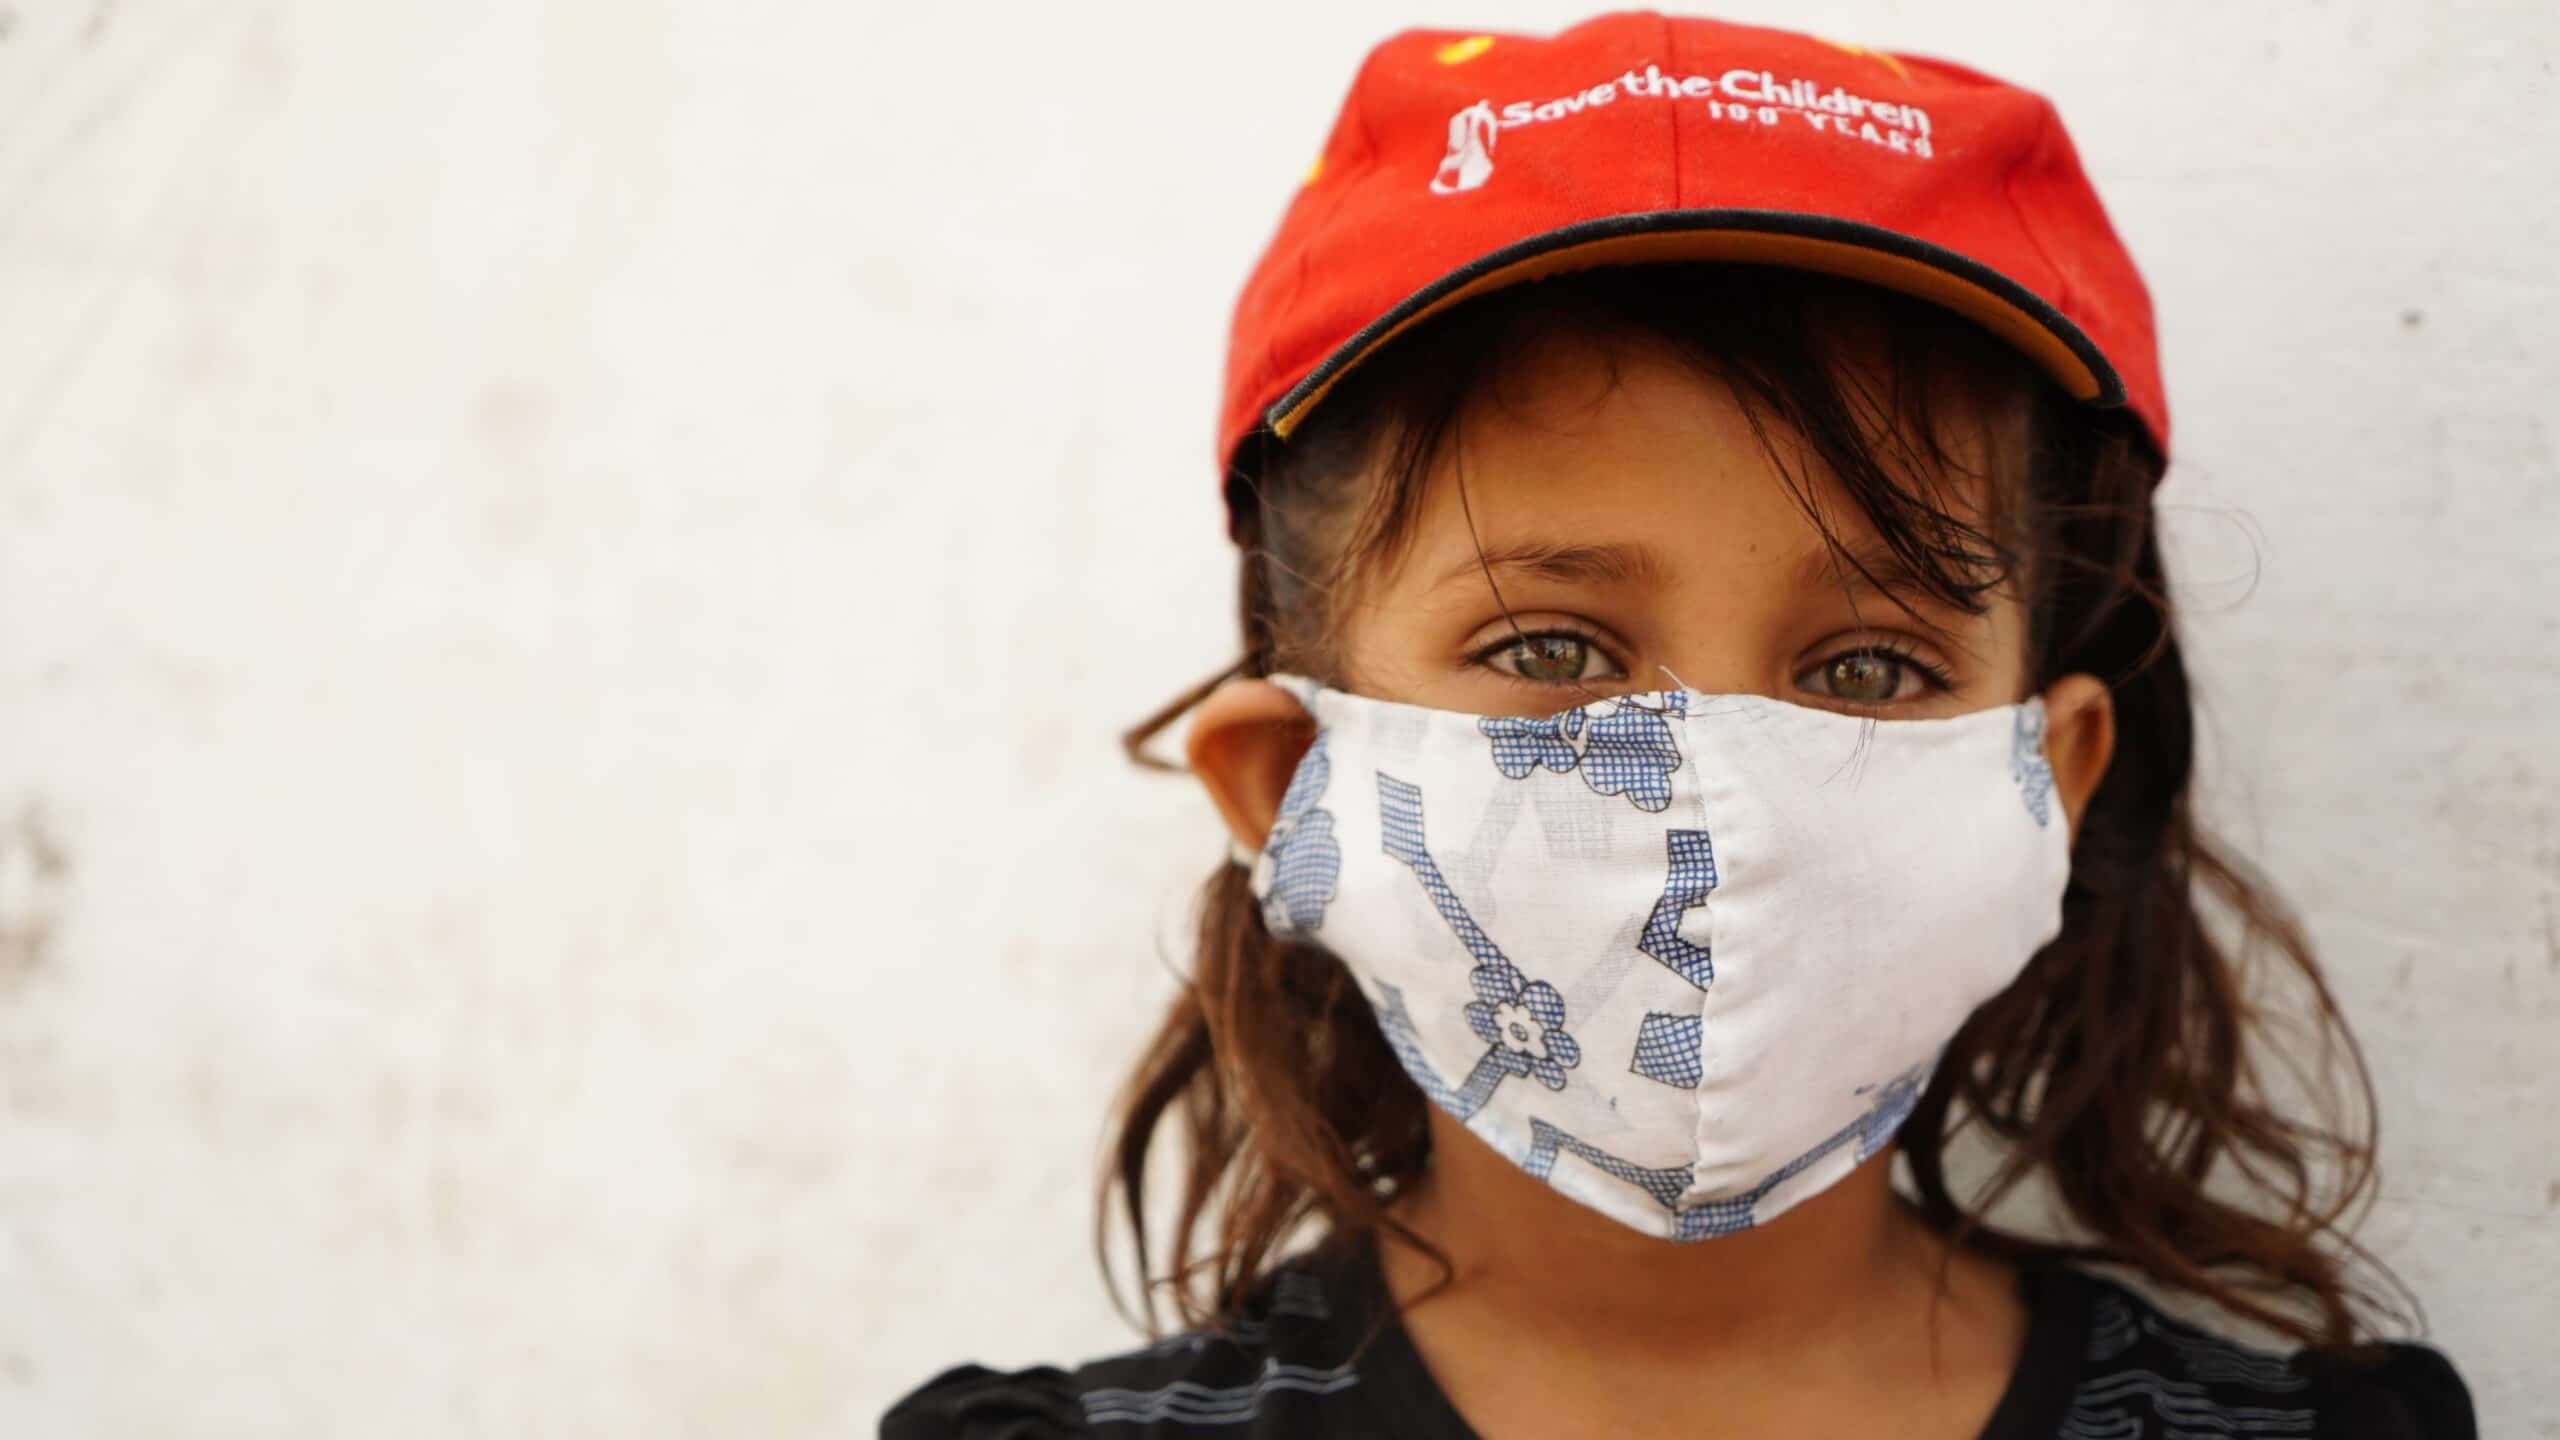 Nærbilde av en jente med ansiktsmaske og rød Redd Barna-cap